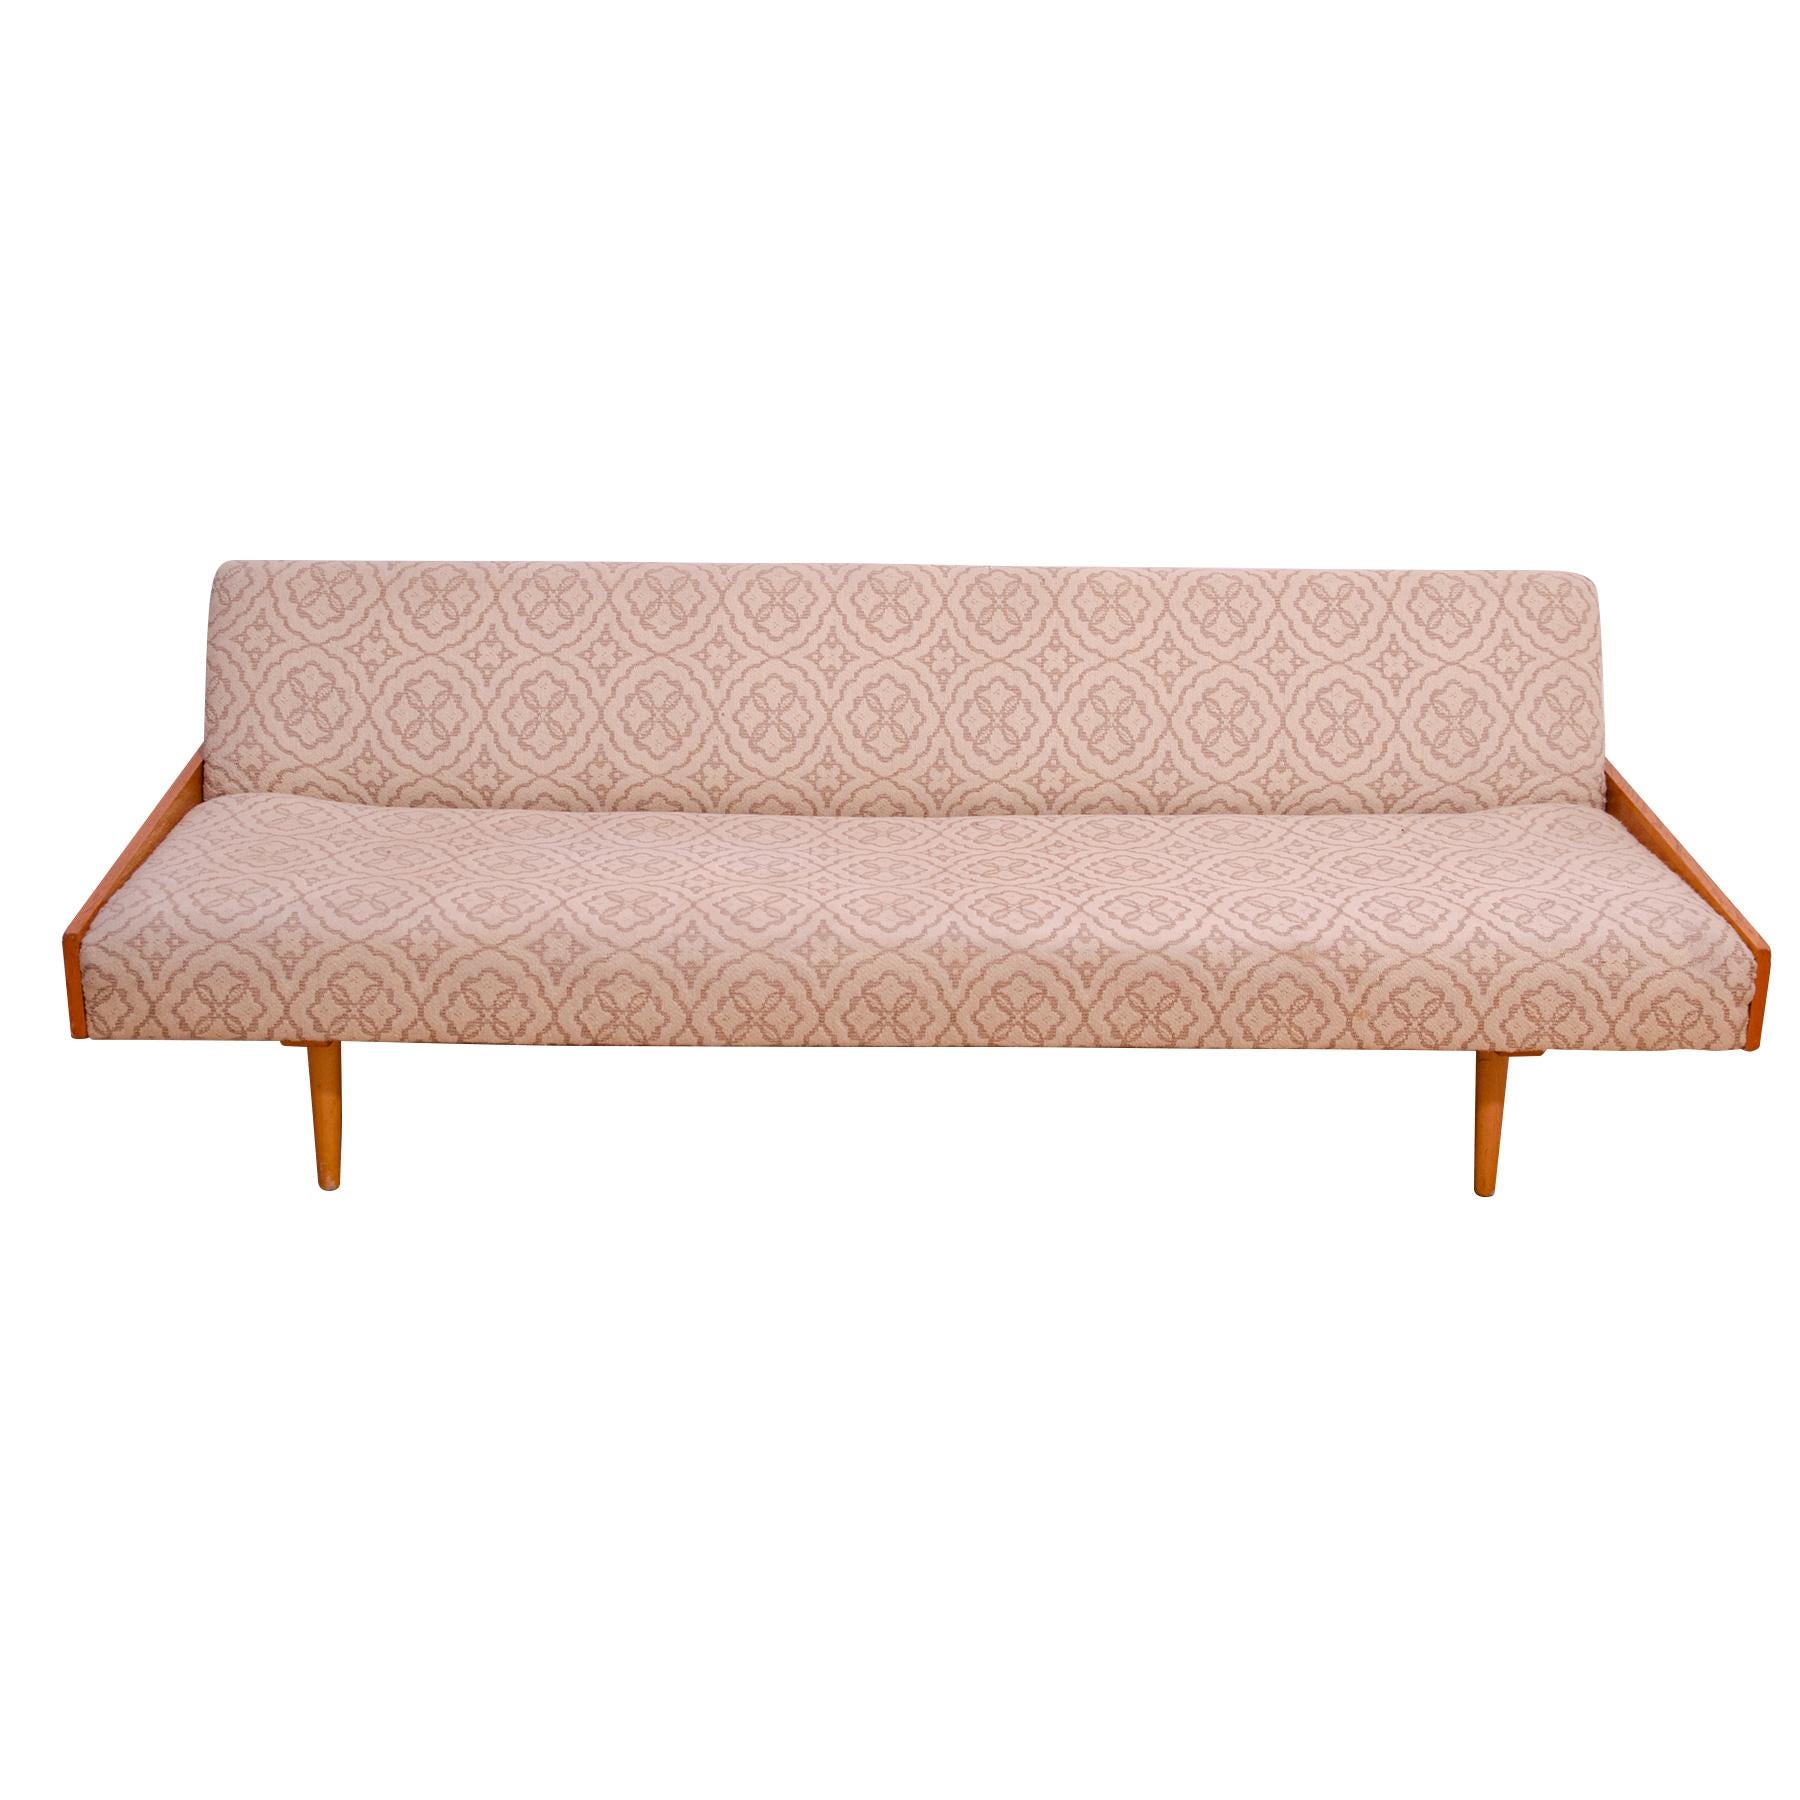 Dieses Sofabett im skandinavischen Stil wurde in der ehemaligen Tschechoslowakei in den 1970er Jahren hergestellt.  Das Sofa hat eine Holzstruktur mit Eschenholzfurnier, insgesamt ist es in sehr gutem Vintage-Zustand, zeigt leichte Alters- und